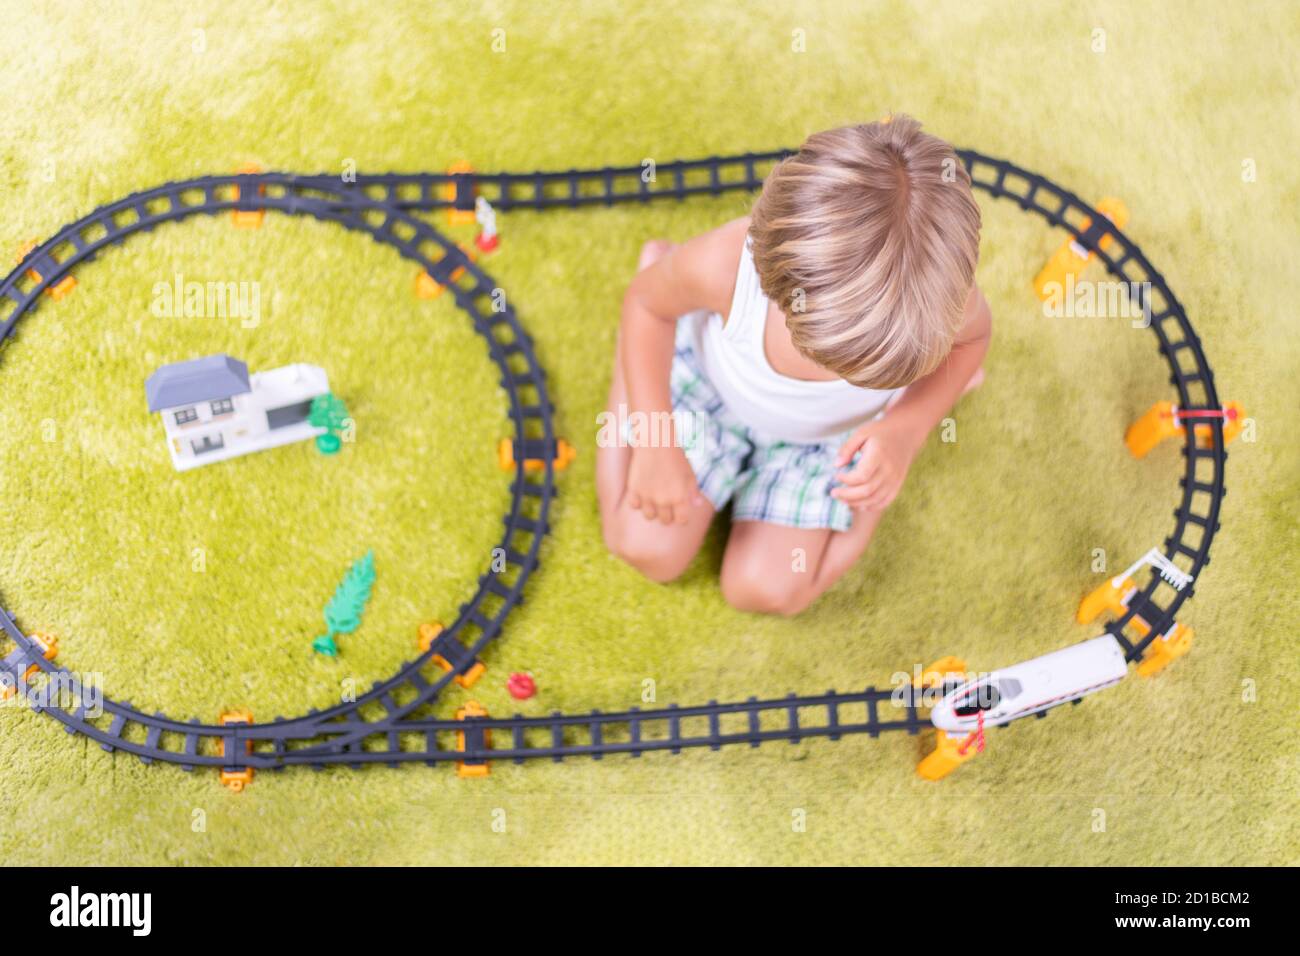 Il ragazzo gioca con la ferrovia di plastica. Bambino con treno giocattolo. Giocattoli didattici per bambini piccoli. Ragazzino che costruisce binari ferroviari su tappeto verde. Foto Stock